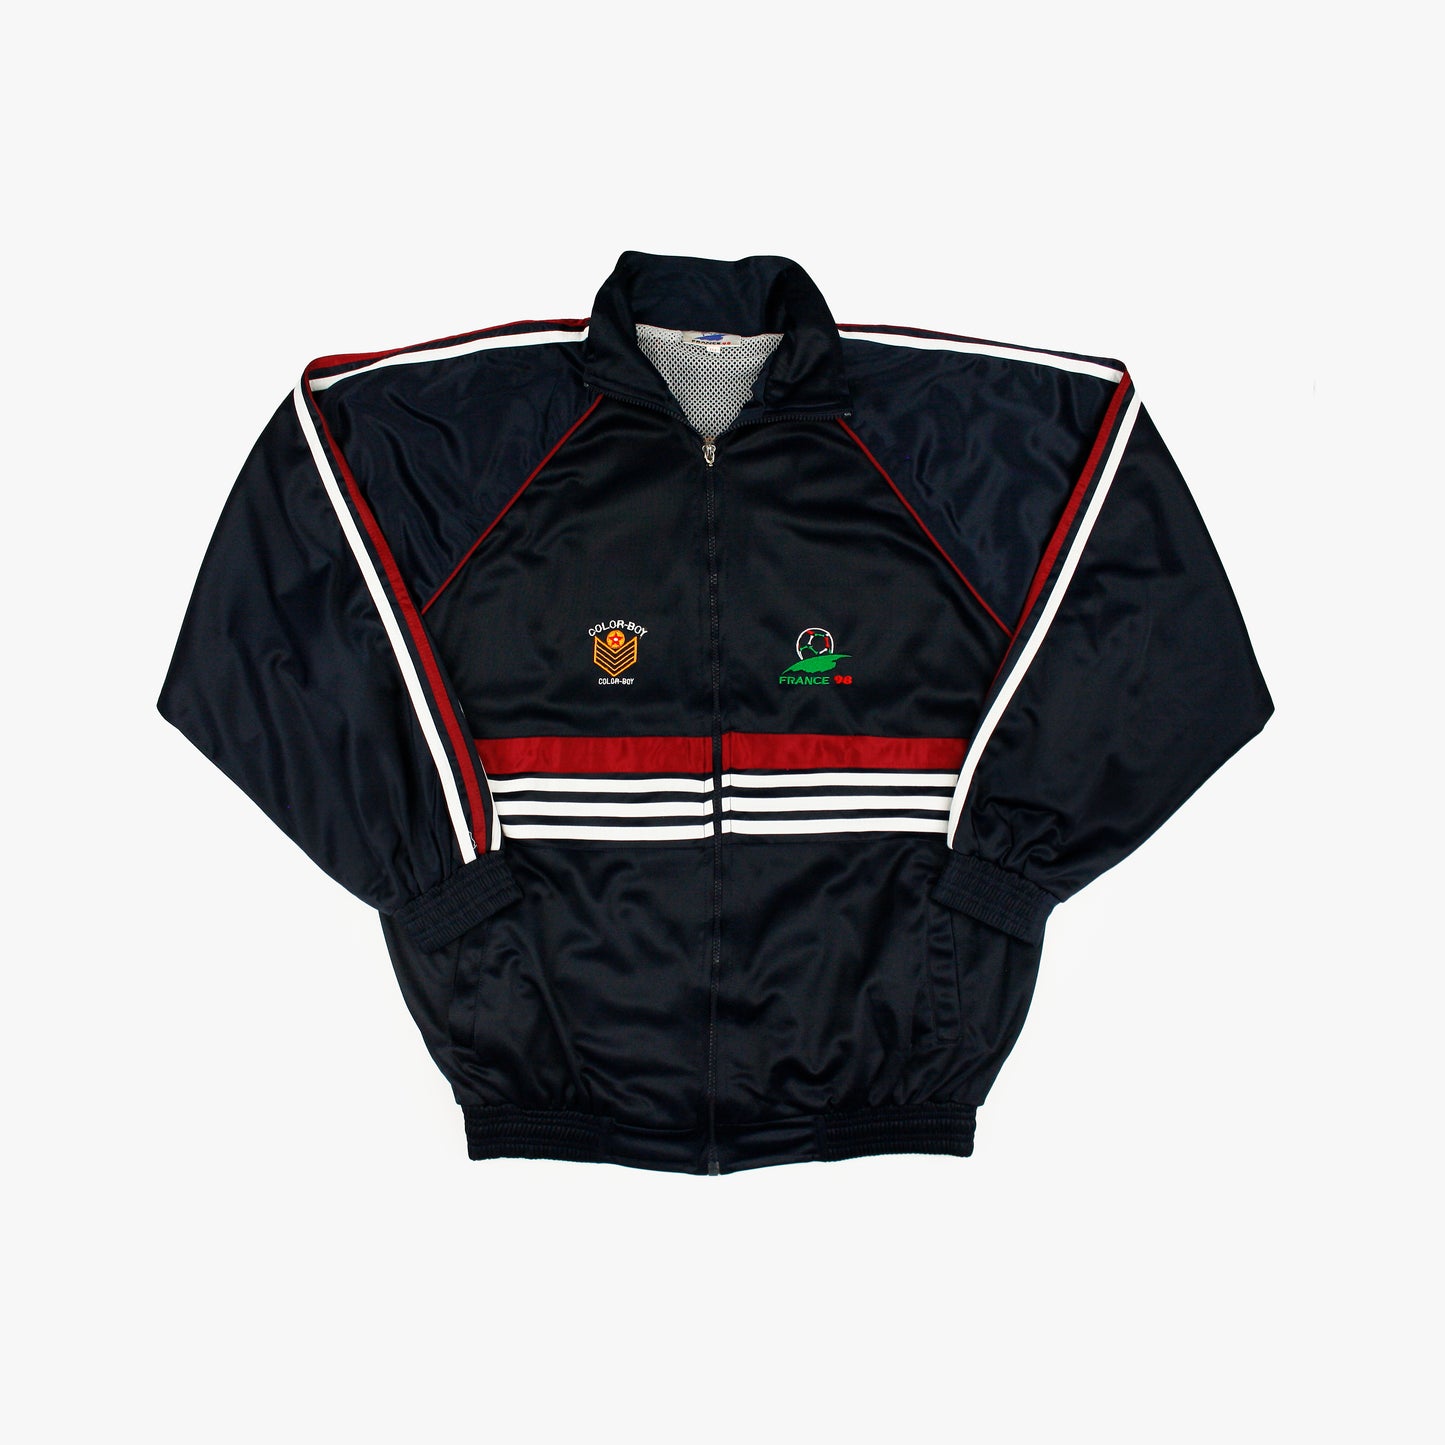 France 98 • Promotional Jacket • XXL